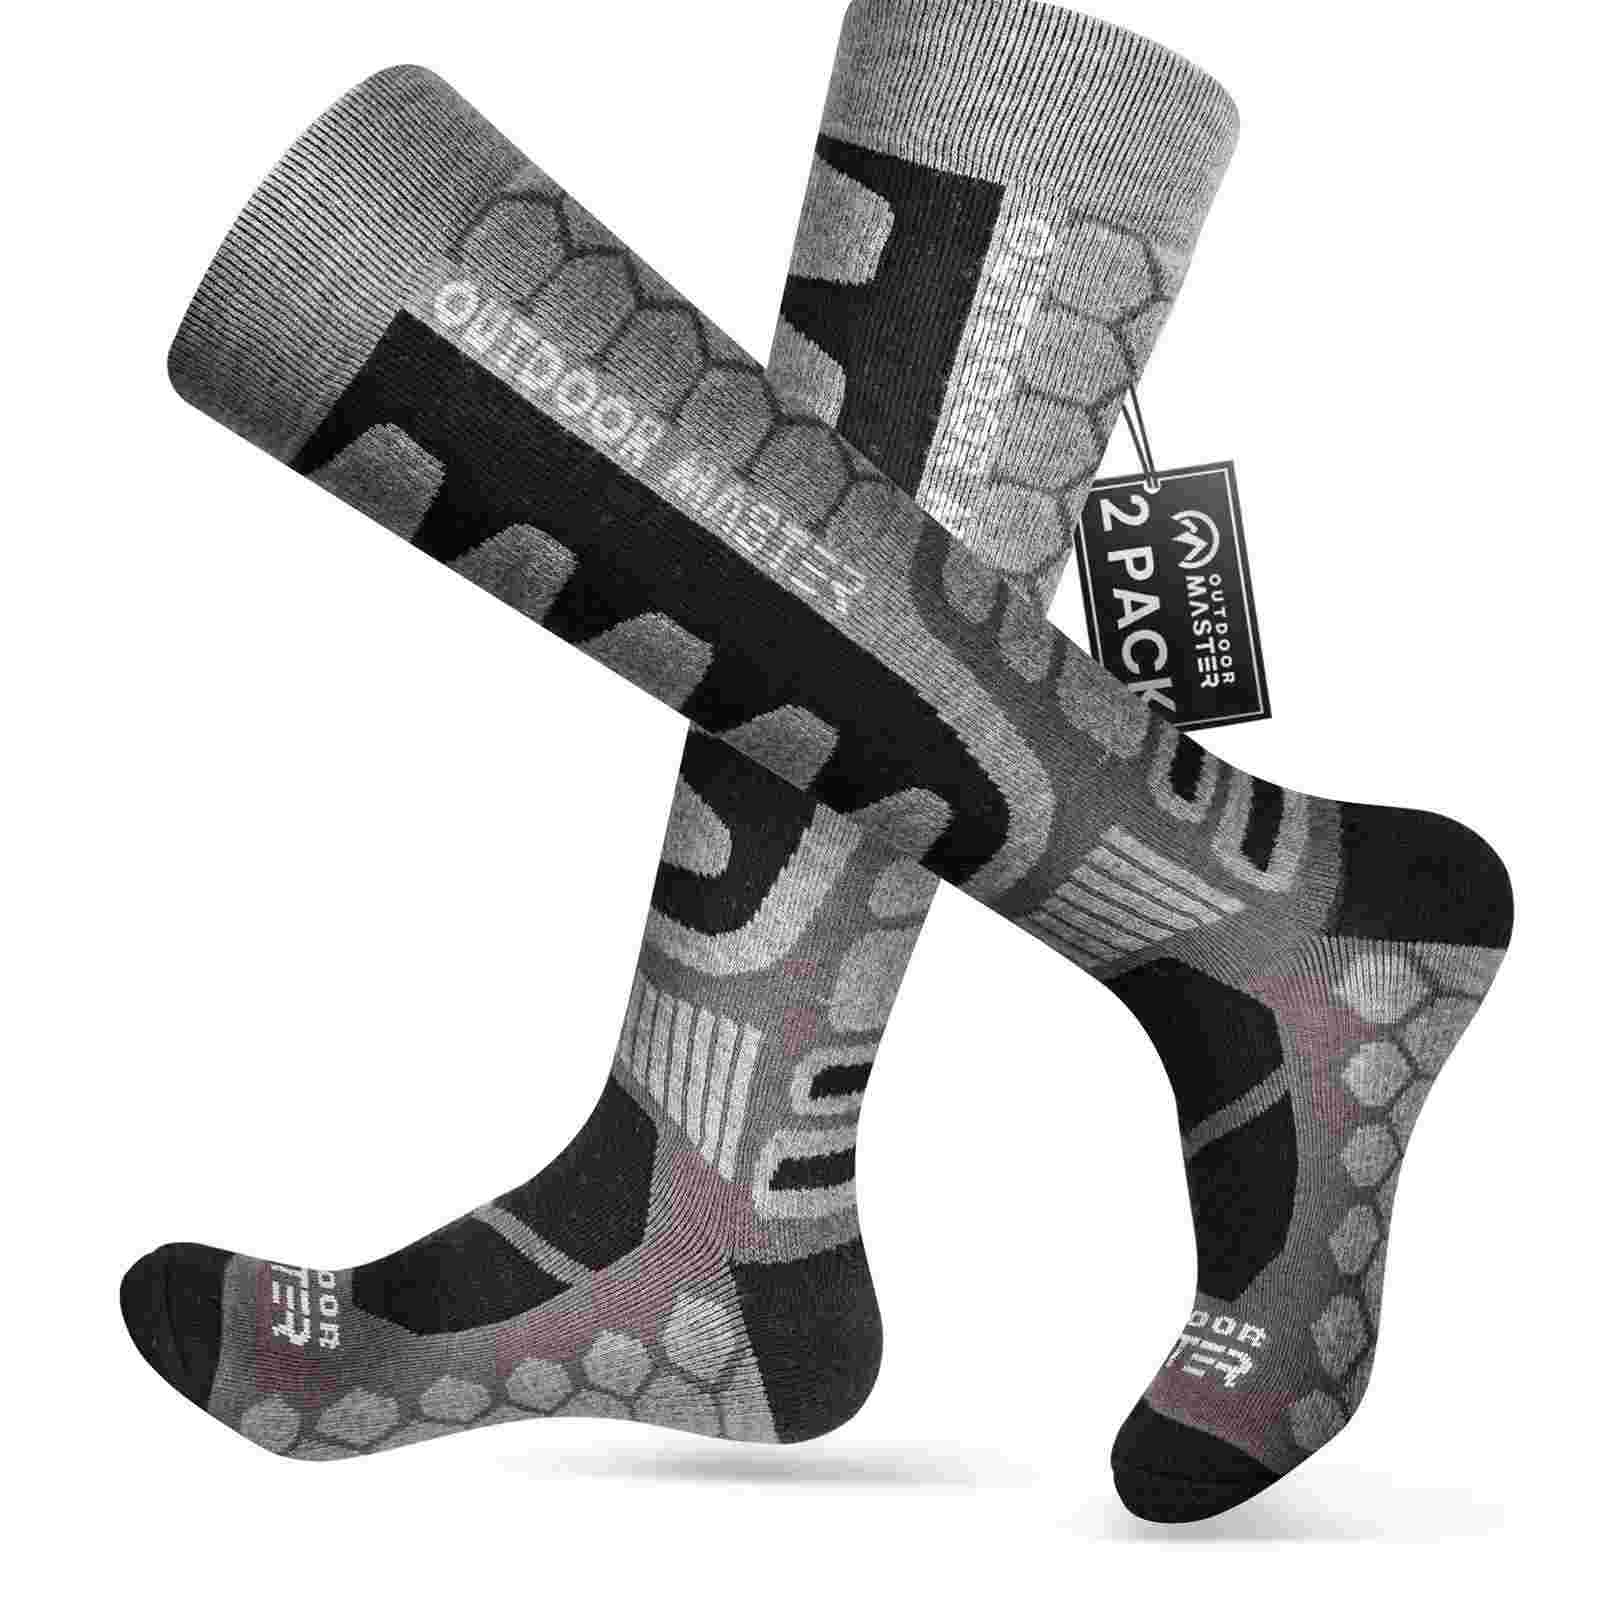 Merino Wool Ski Socks 2/3 Pairs